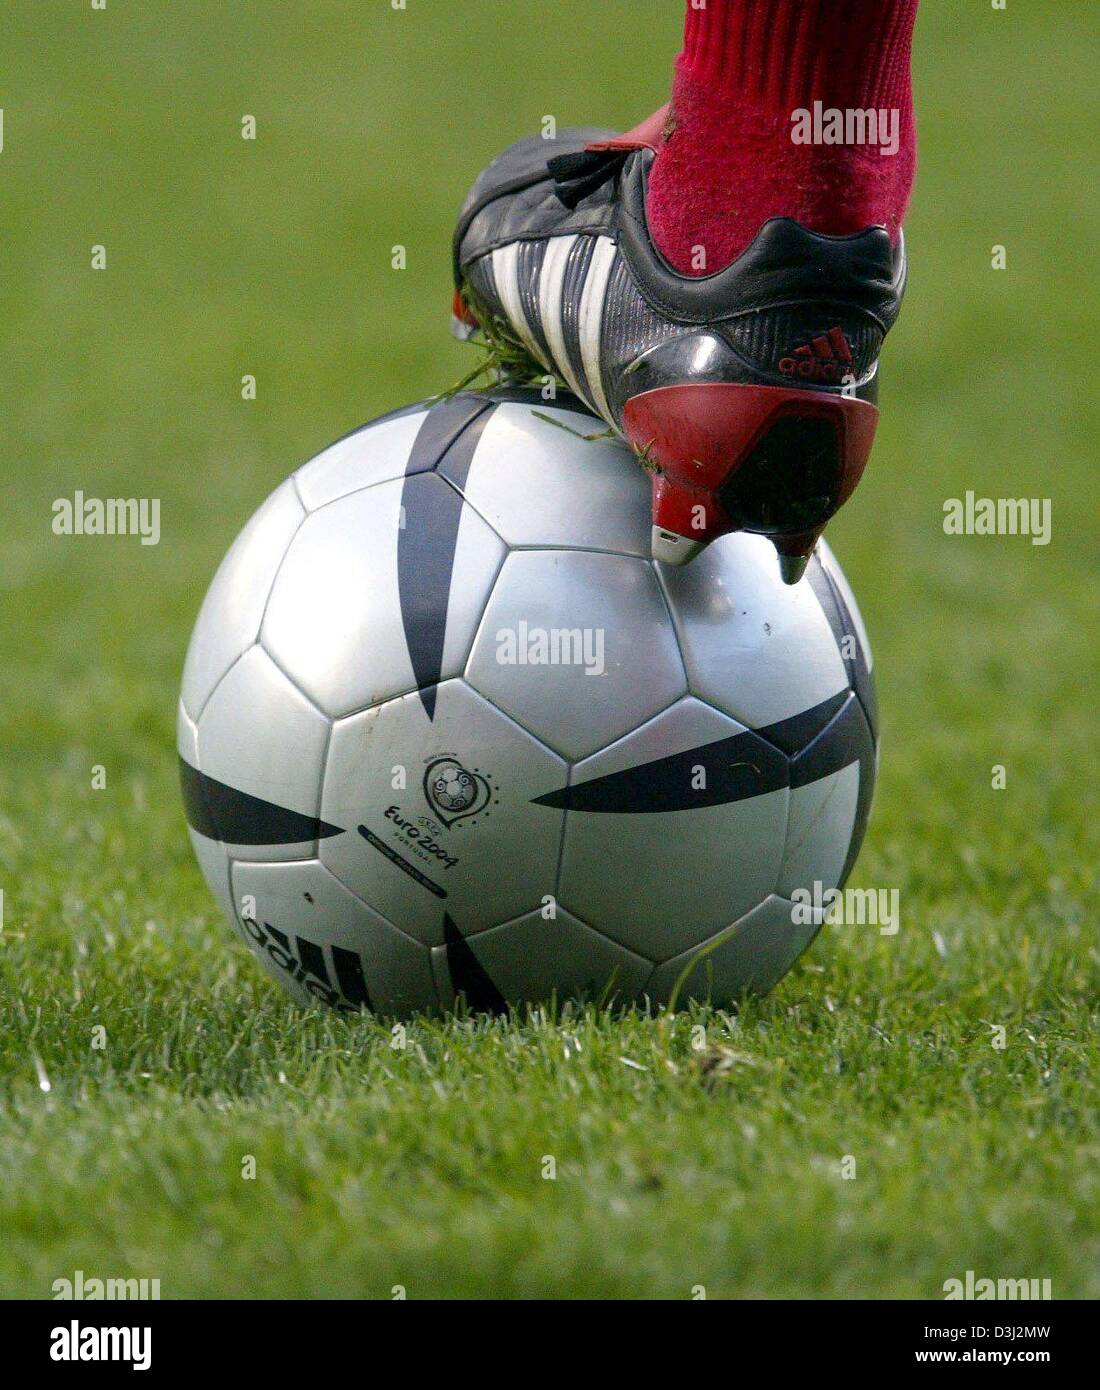 roteiro soccer ball